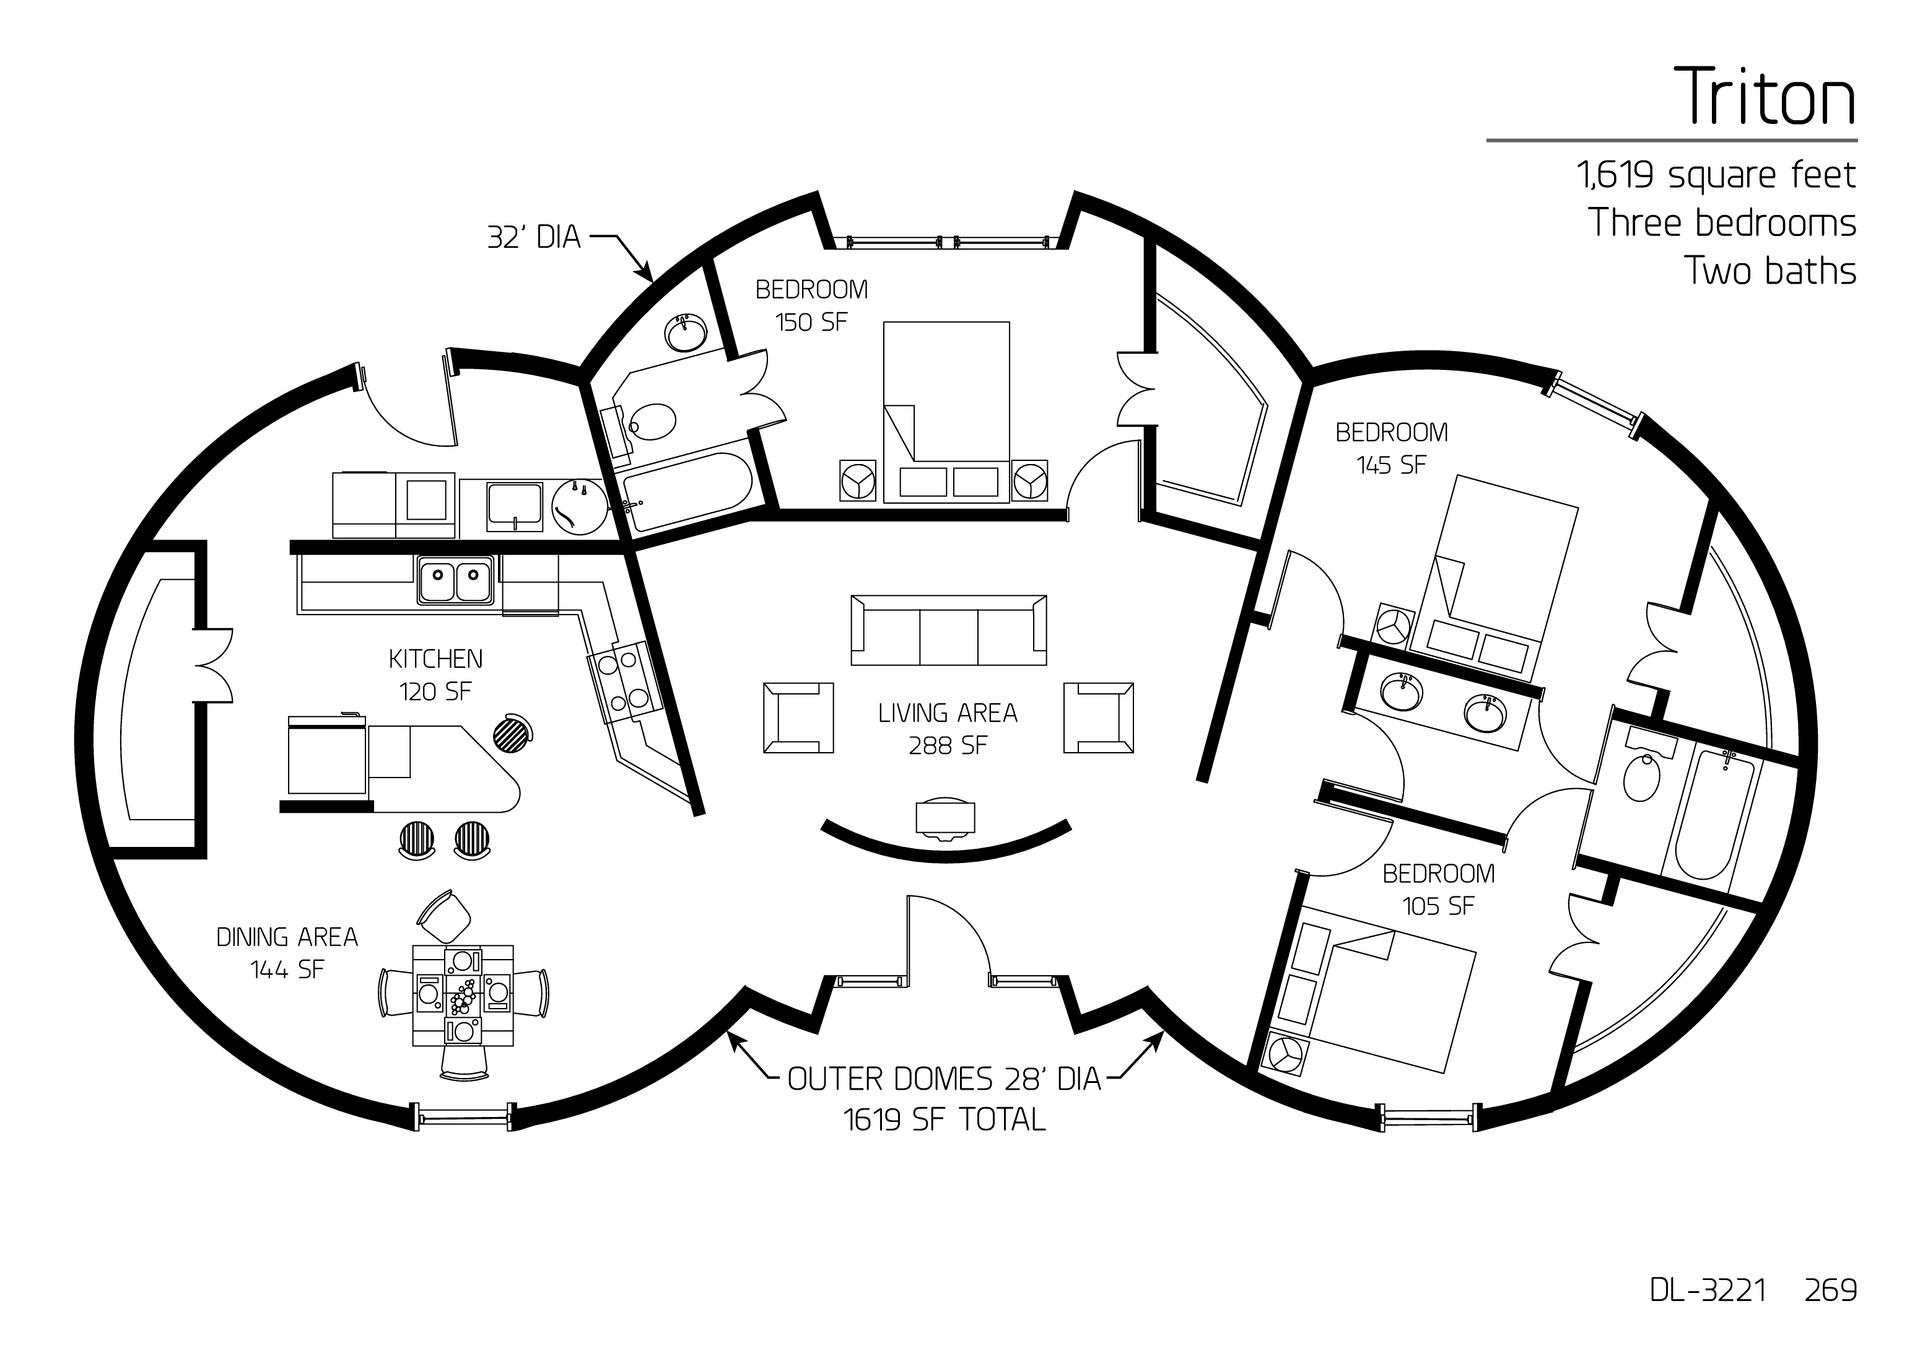 Triton: A 32' Diameter Triple Domed, 1,619 SF, Three-Bedroom, Two-Bath Floor Plan.